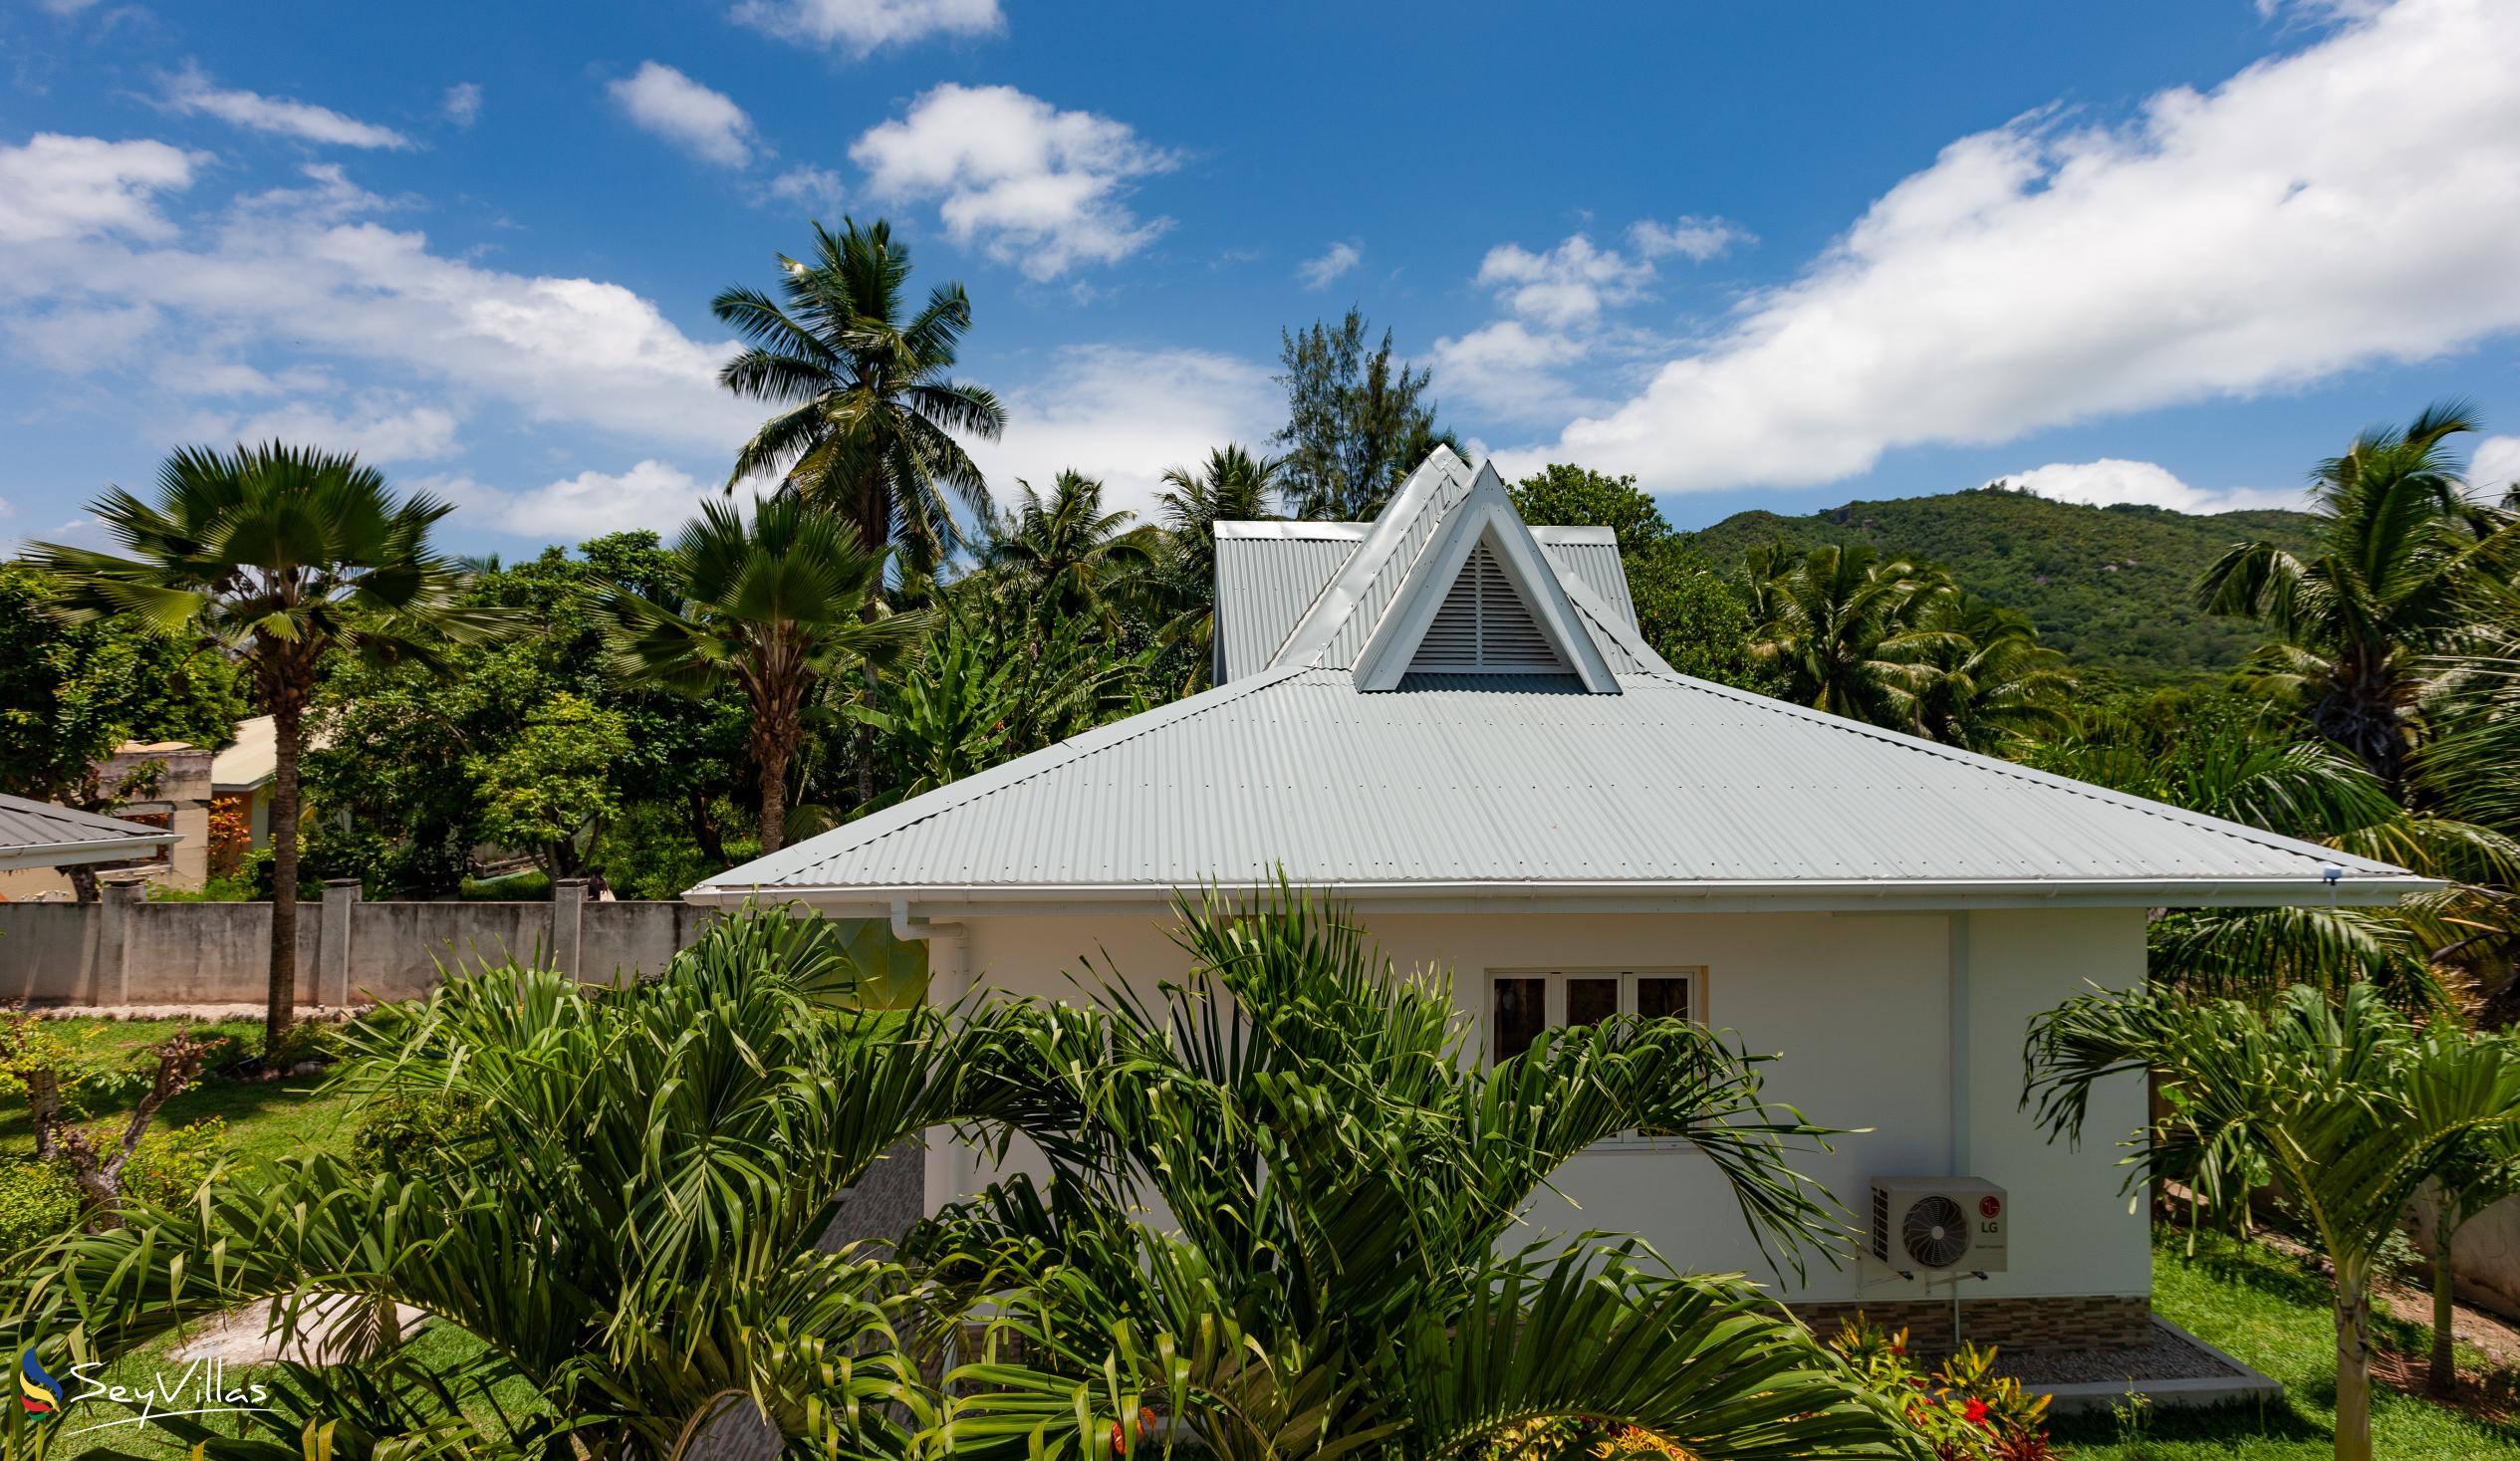 Foto 9: Villa Aya - Aussenbereich - Praslin (Seychellen)